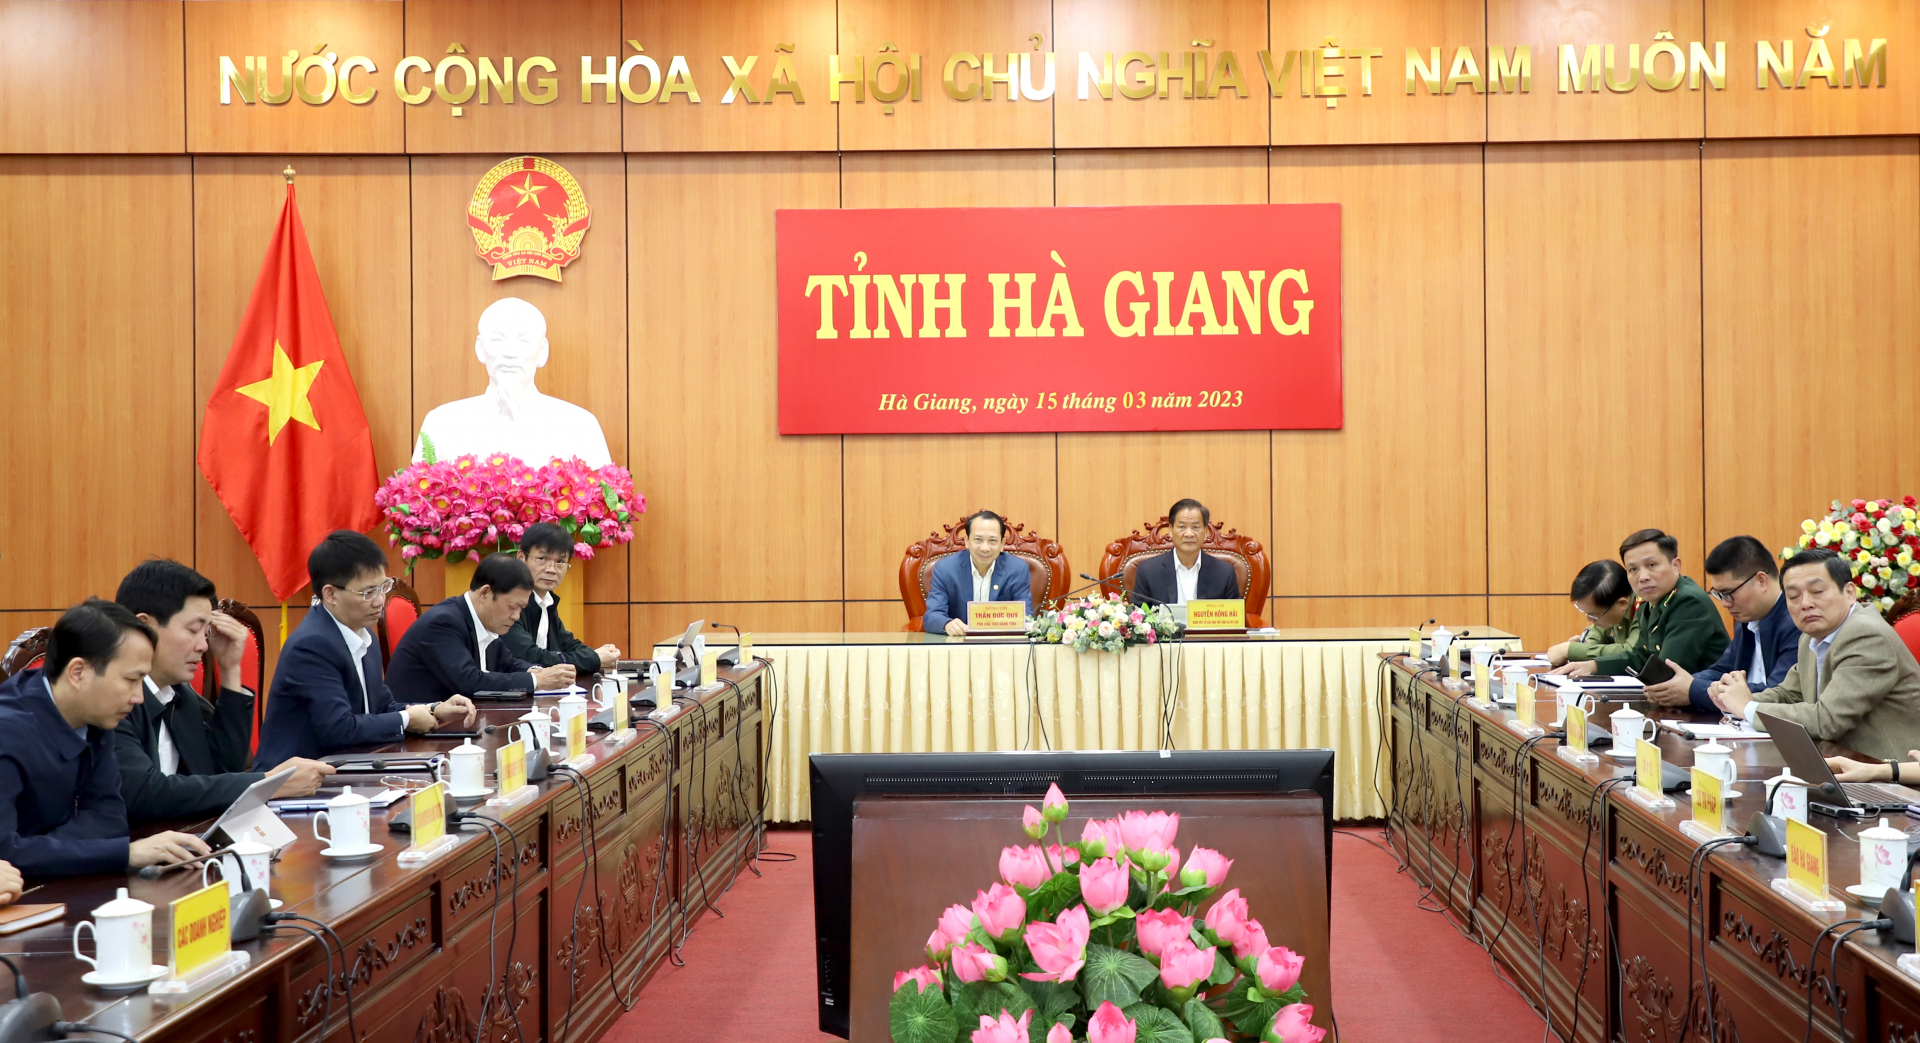 Phó Chủ tịch UBND tỉnh Trần Đức Quý và các đại biểu dự tại điểm cầu Hà Giang.
